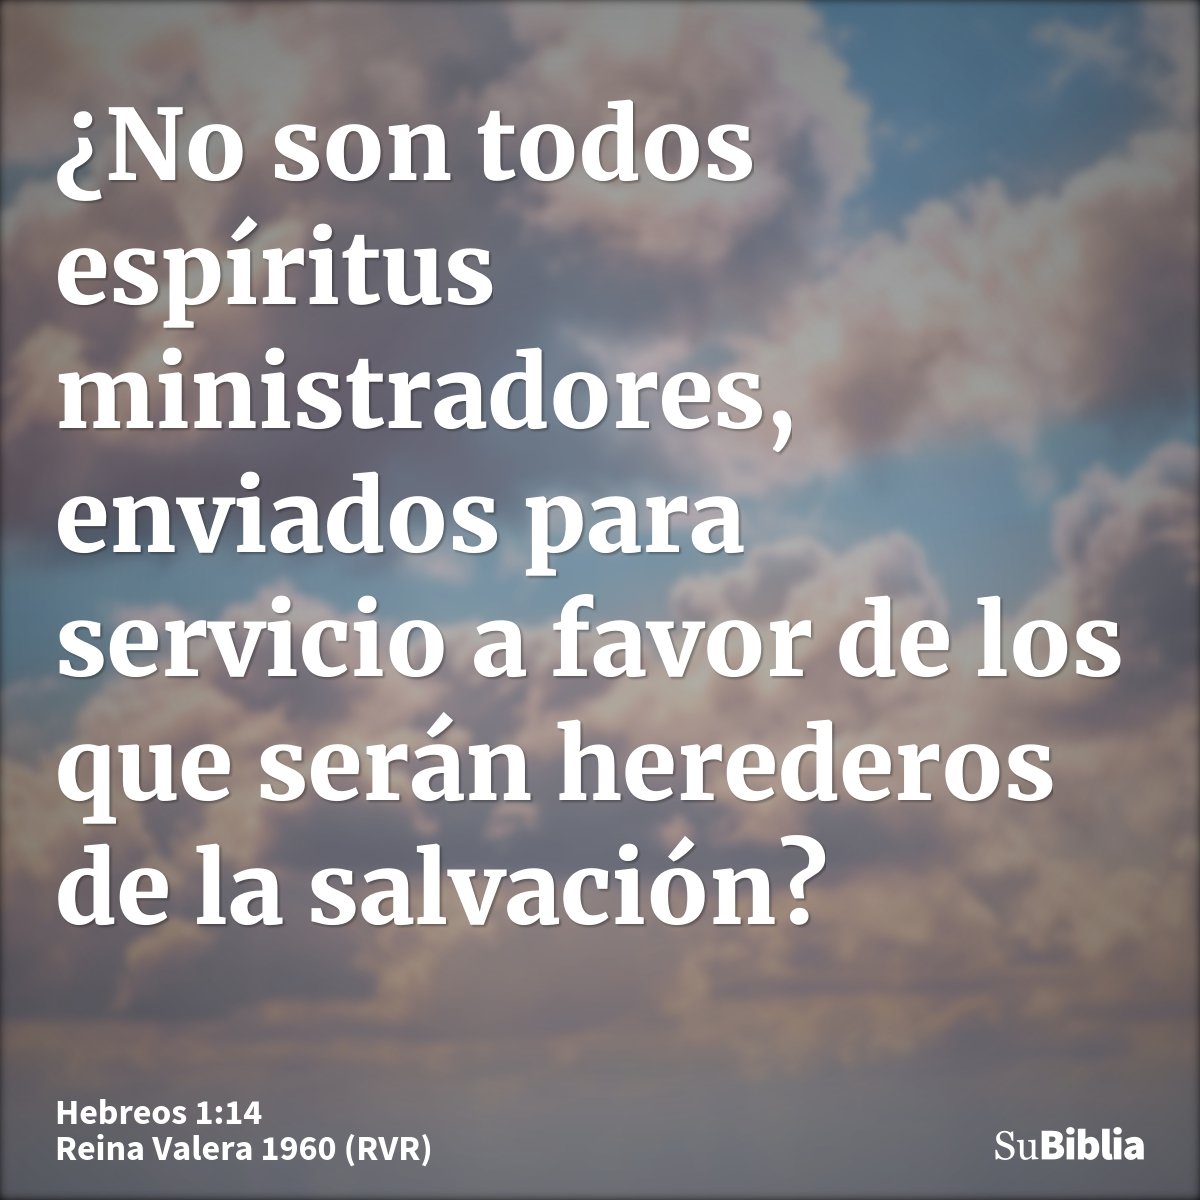 ¿No son todos espíritus ministradores, enviados para servicio a favor de los que serán herederos de la salvación?